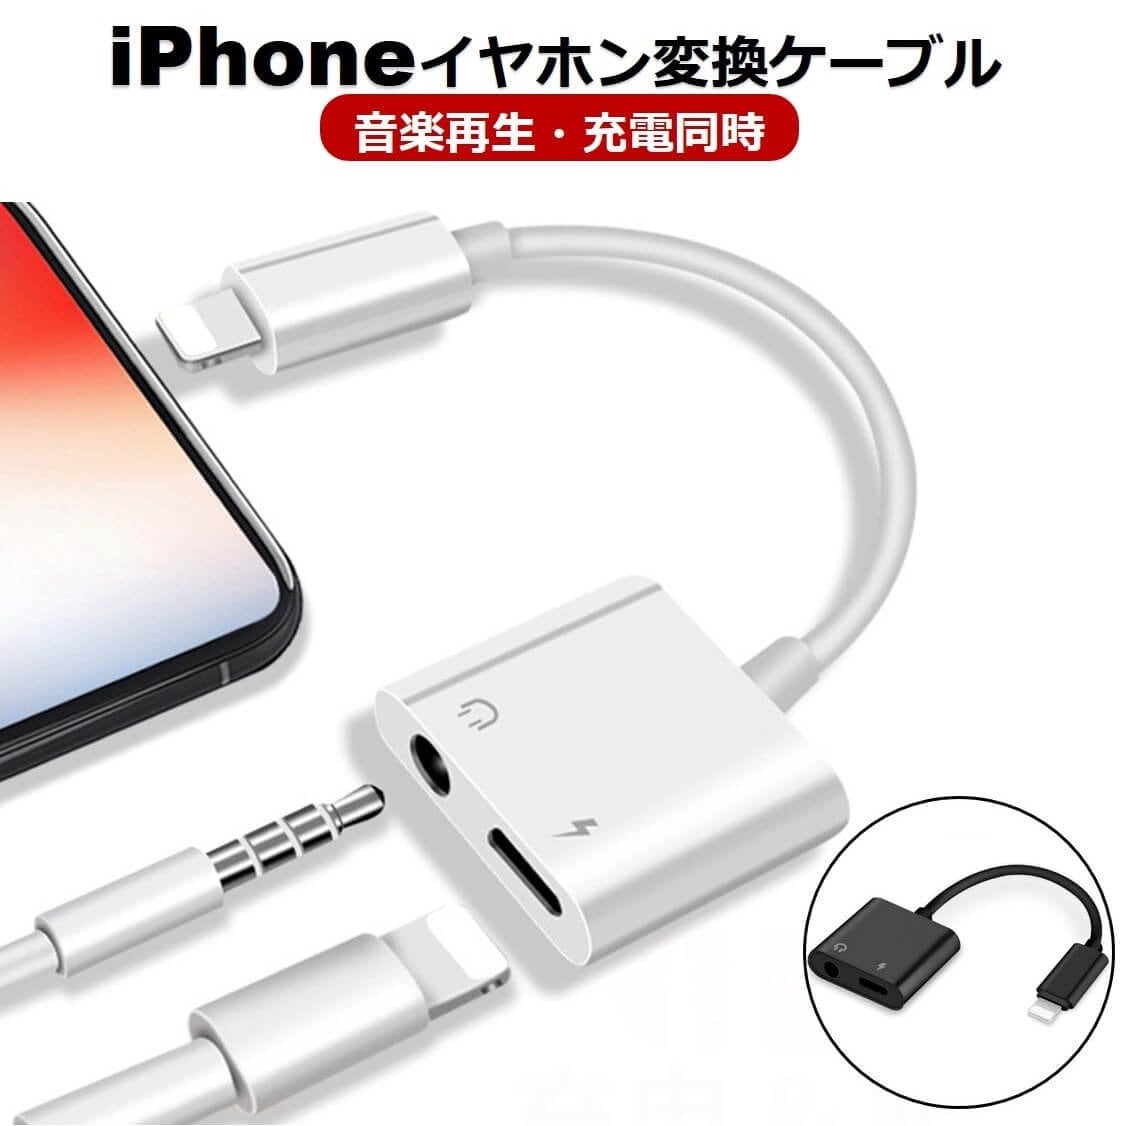 アウトレット iPhone イヤホン 変換 アダプタ ケーブル 2in1 アイフォン 充電 データ通信 通話 音楽再生 高品質 